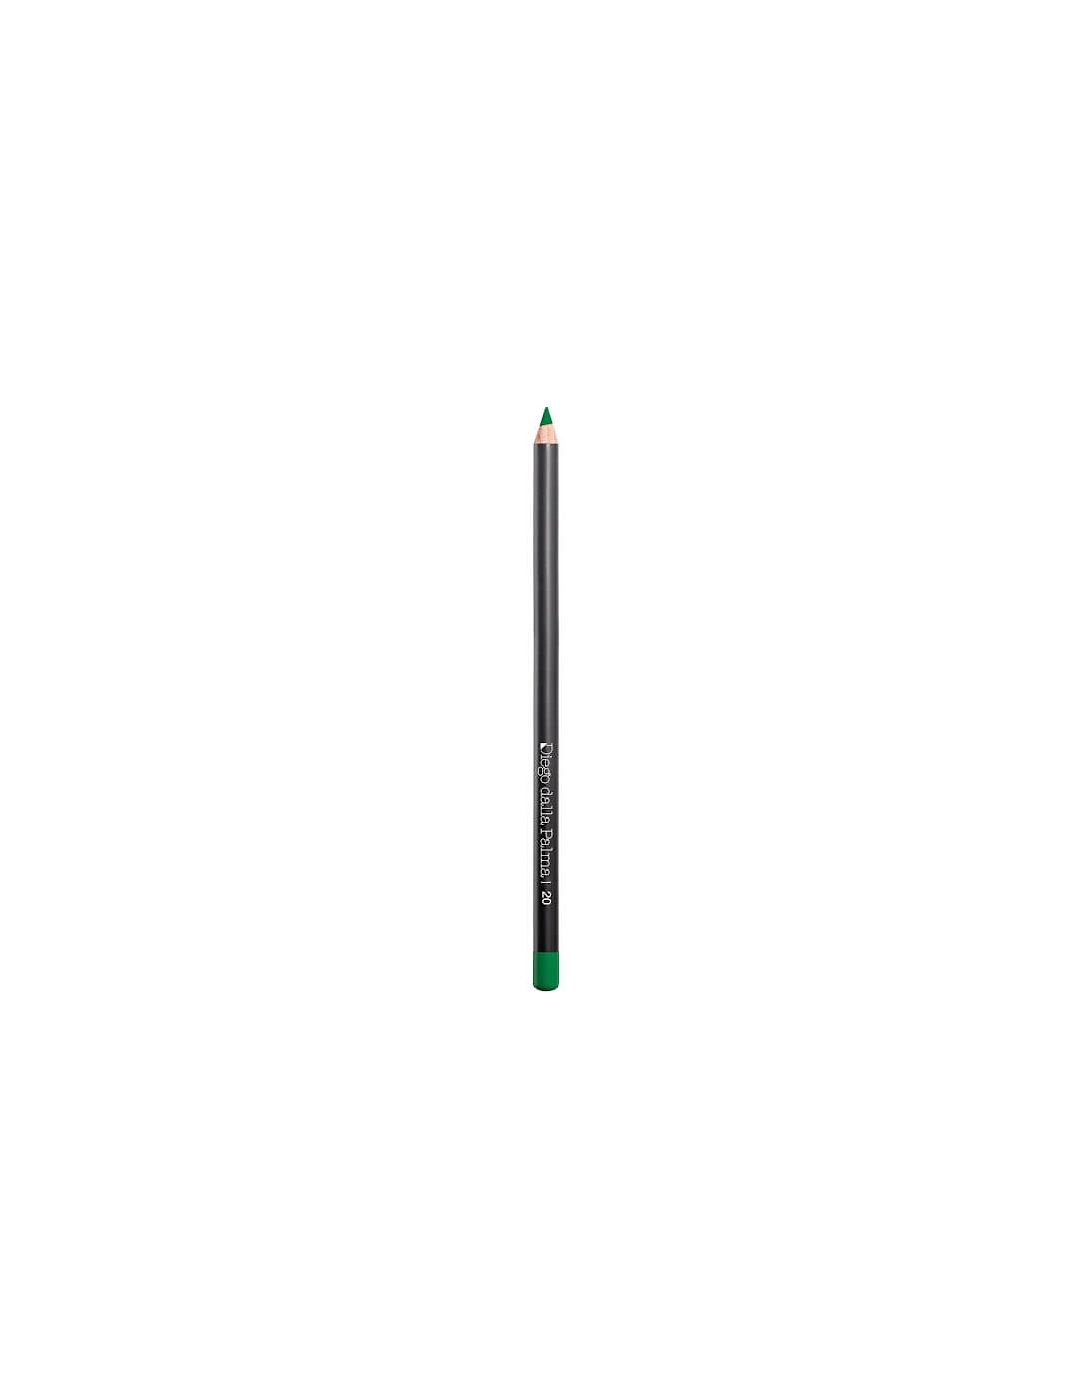 Eye Pencil - 20 Emerald Green - Diego Dalla Palma, 2 of 1